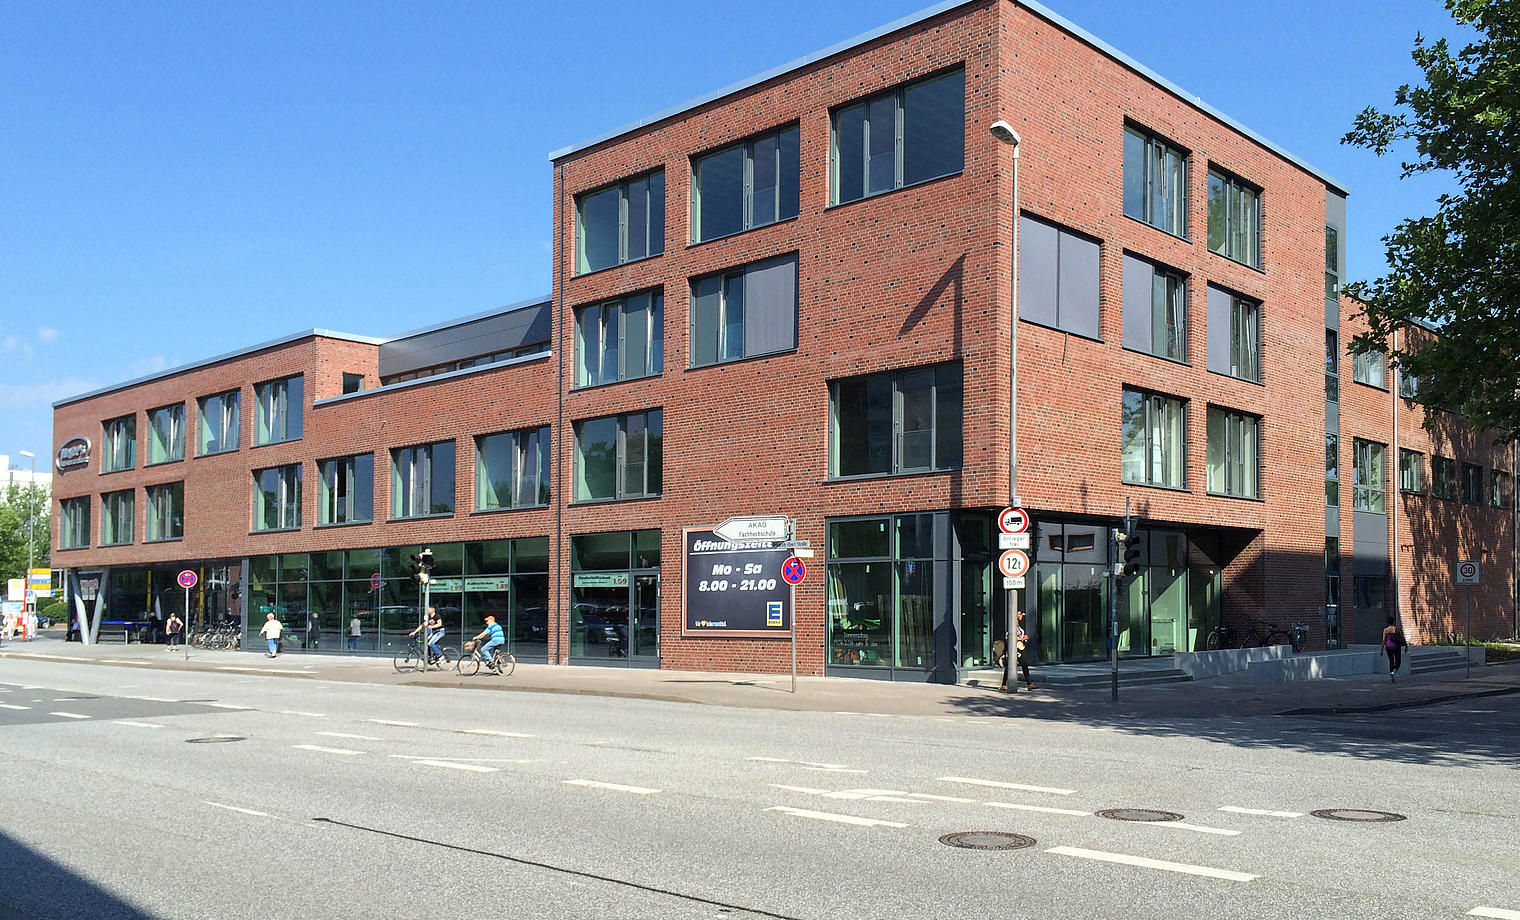 Geschäftshaus mit Frischemarkt Pinneberg Neubau und Umbau eines Edeka-Marktes mit Büro- und Gewerbeflächen, Tiefgarage